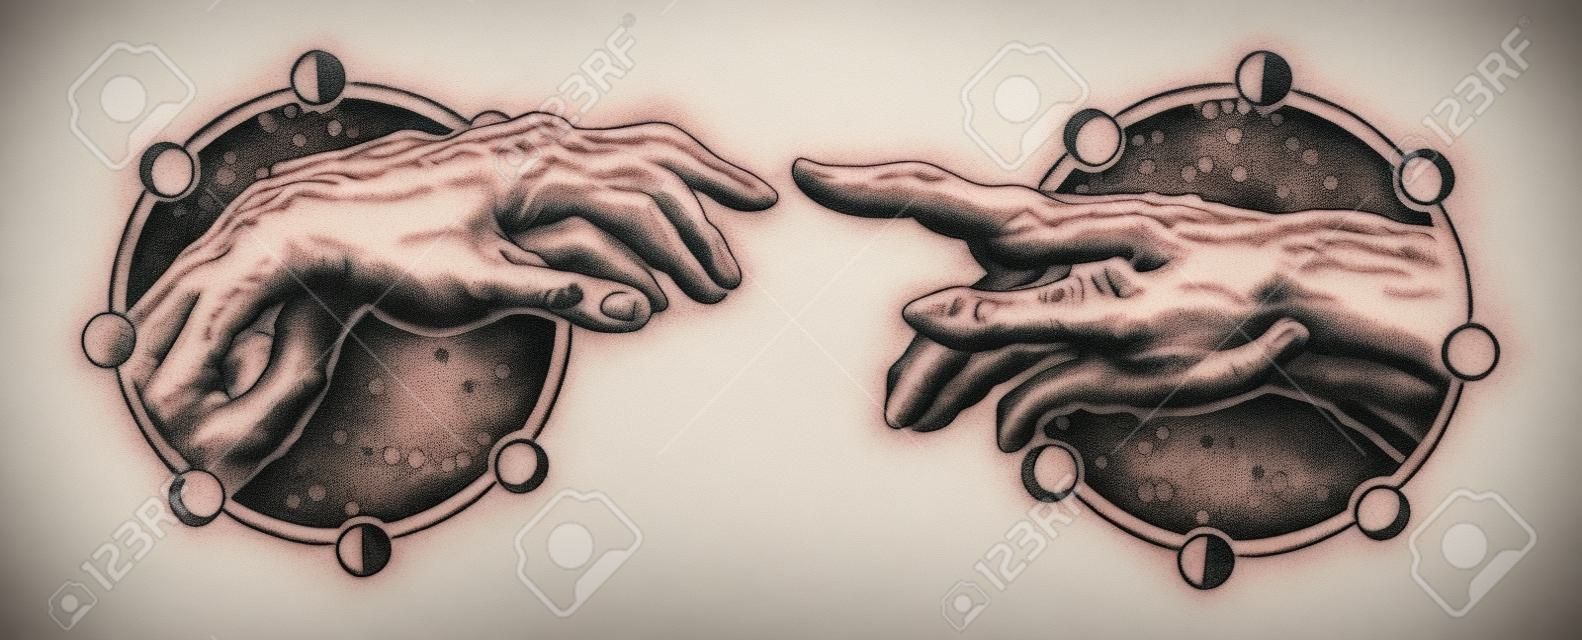 Michelangelo 하나님의 손길. 인간의 손에 손가락 문신과 t- 셔츠 디자인을 만지고. 손 문신 르네상스입니다. 하나님과 아담, 영성, 종교, 연결 및 상호 작용의 상징